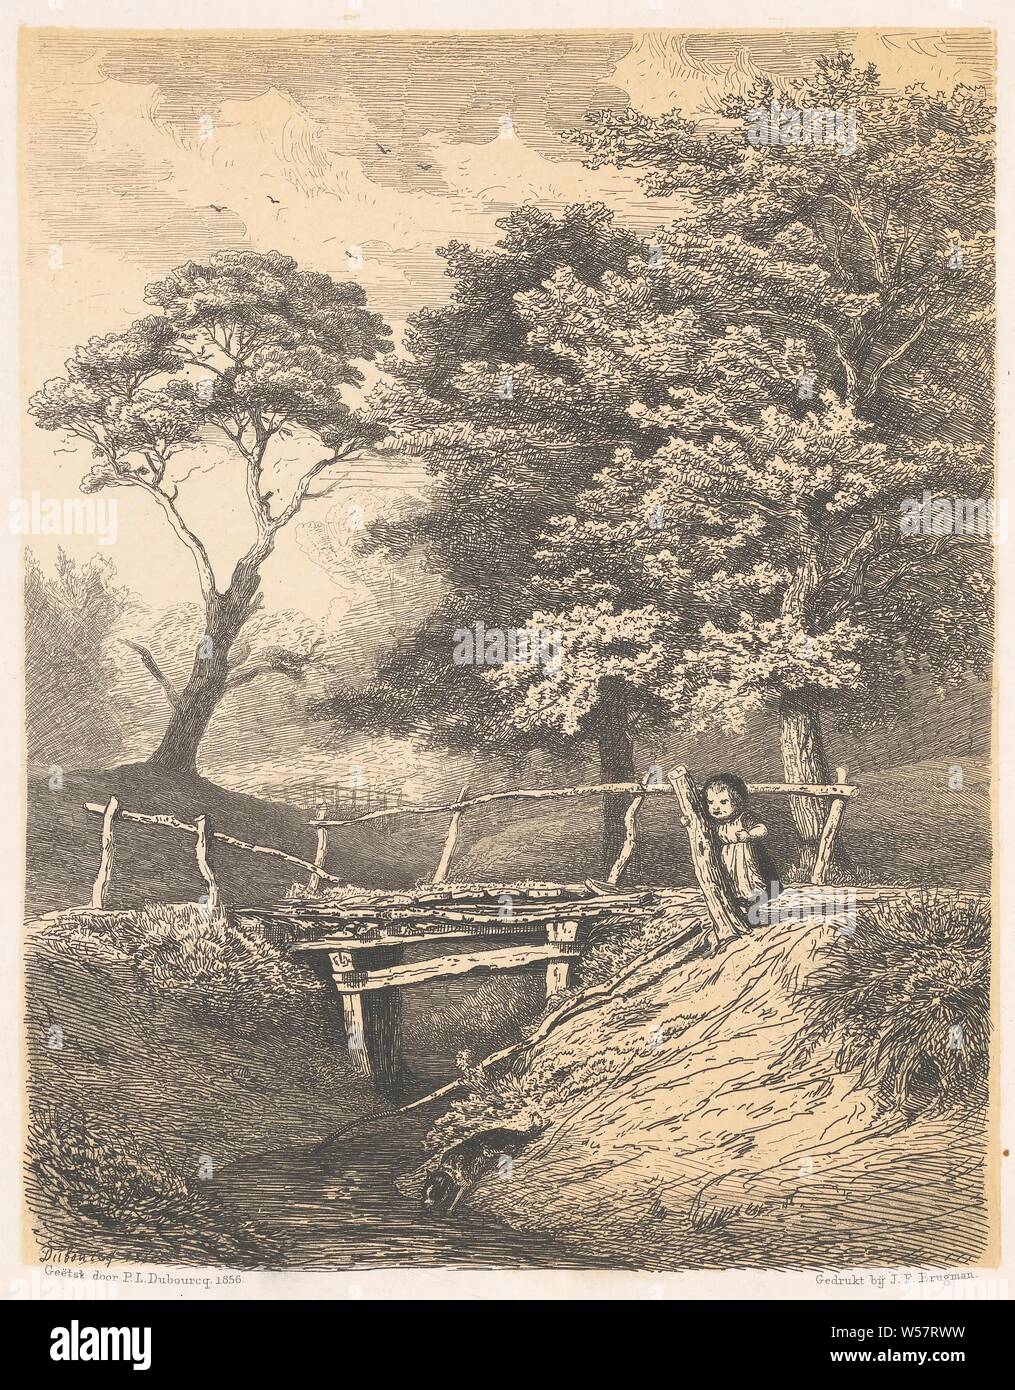 Fille avec chien à pont de bois, l'enfant jouant avec des animaux, Pierre Louis Dubourcq (mentionné sur l'objet), 1856, papier, pointe sèche, h 225 mm × W 190 mm Banque D'Images